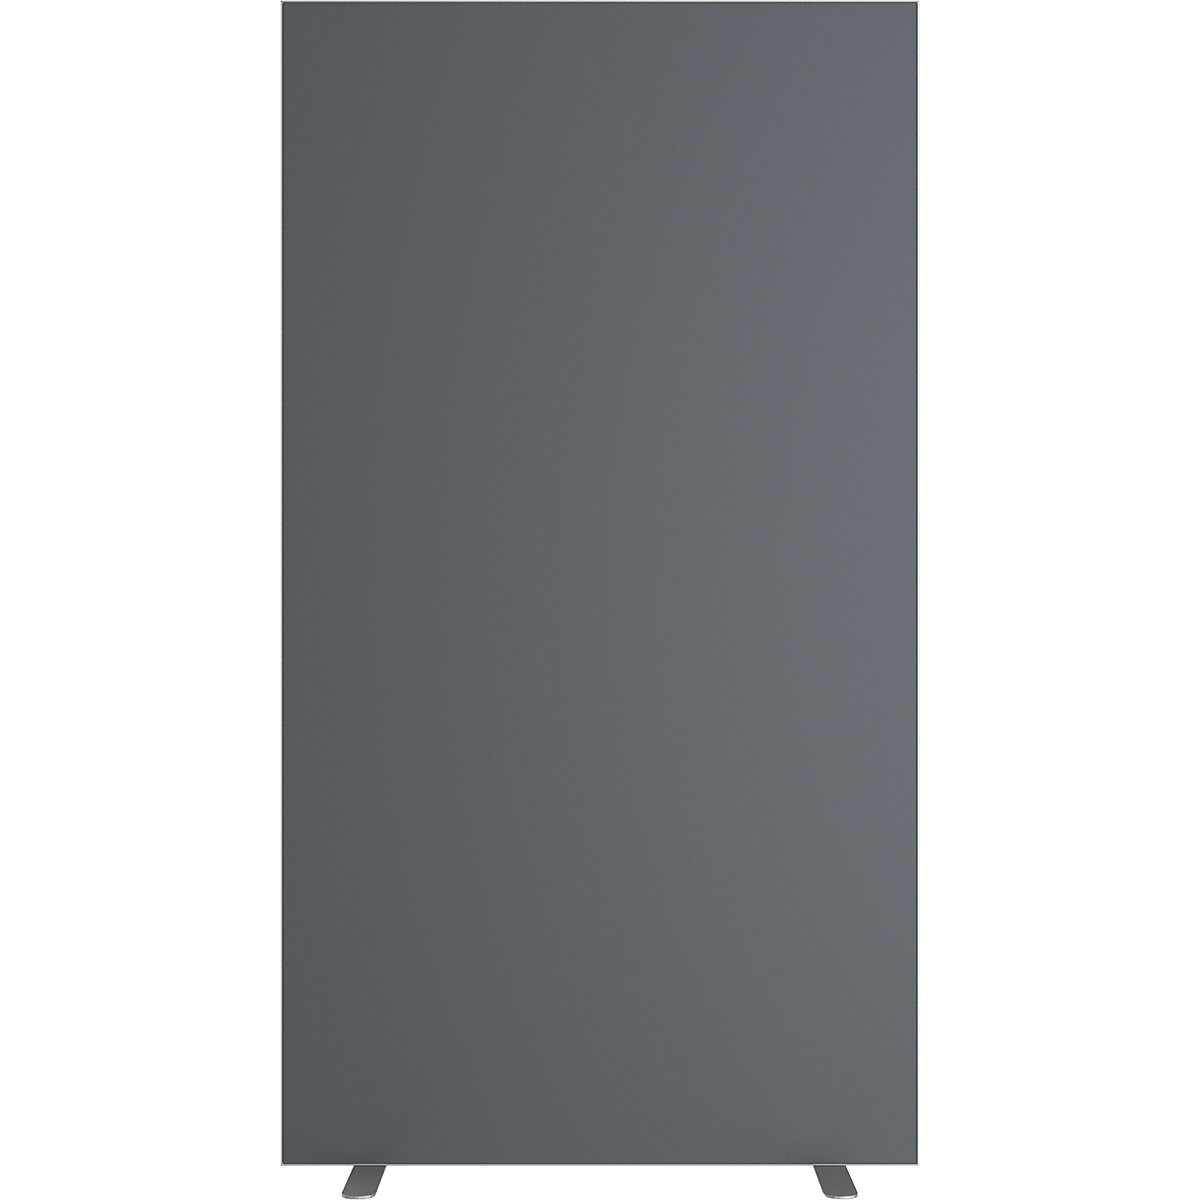 Dělicí stěna easyScreen, jednobarevná, s protihlukovou úpravou, antracitová, šířka 940 mm-18